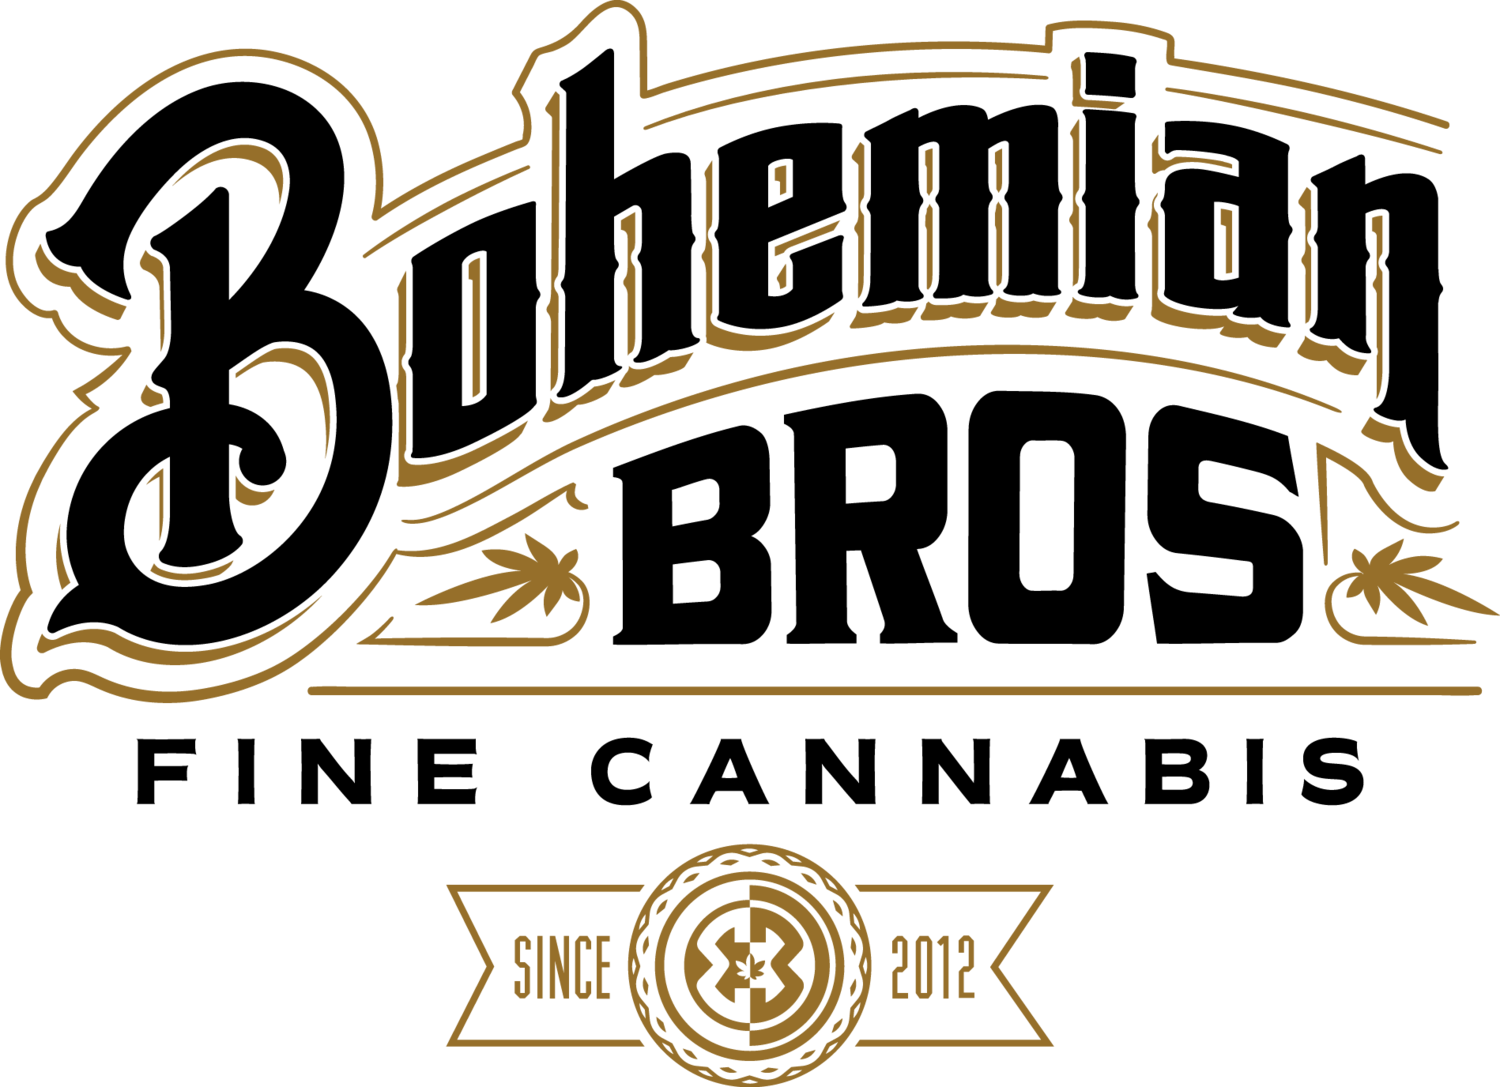 Bohemian Bros Cannabis Brand Logo